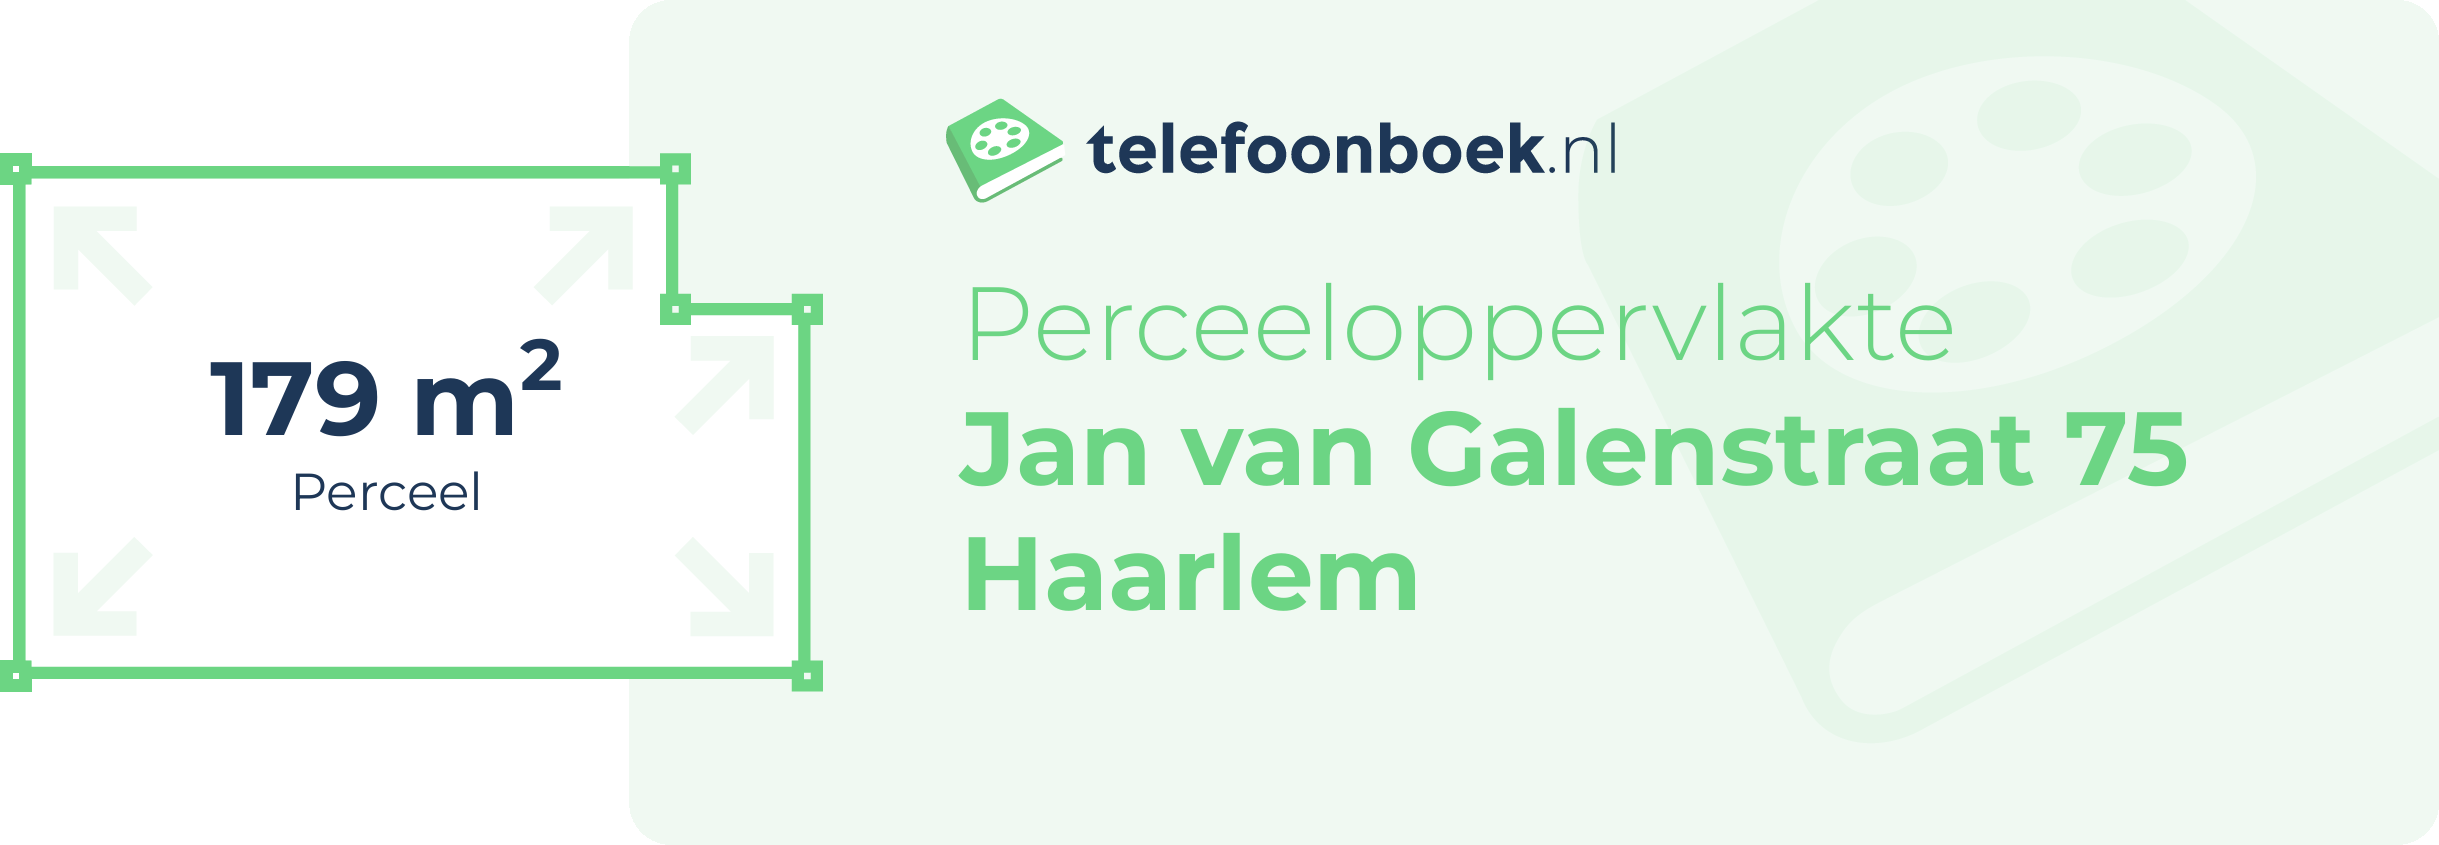 Perceeloppervlakte Jan Van Galenstraat 75 Haarlem